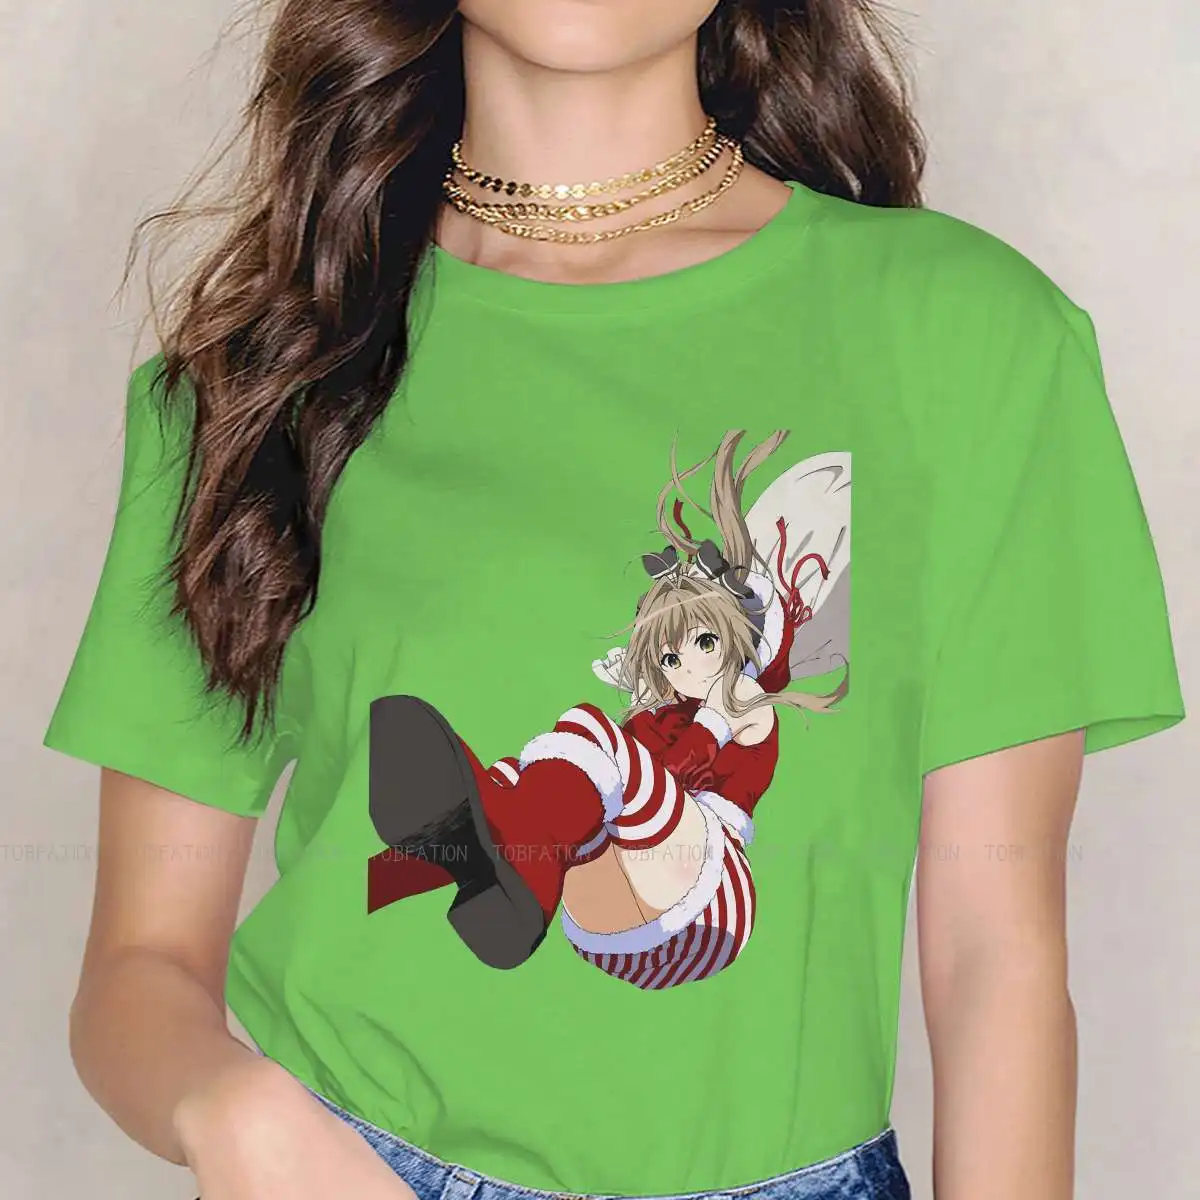 

Повседневная футболка для девочек, креативная анимационная Футболка с блестящим парком Амаги и надписью «Кани Сейя», размеры 4XL, 5XL, популяр...